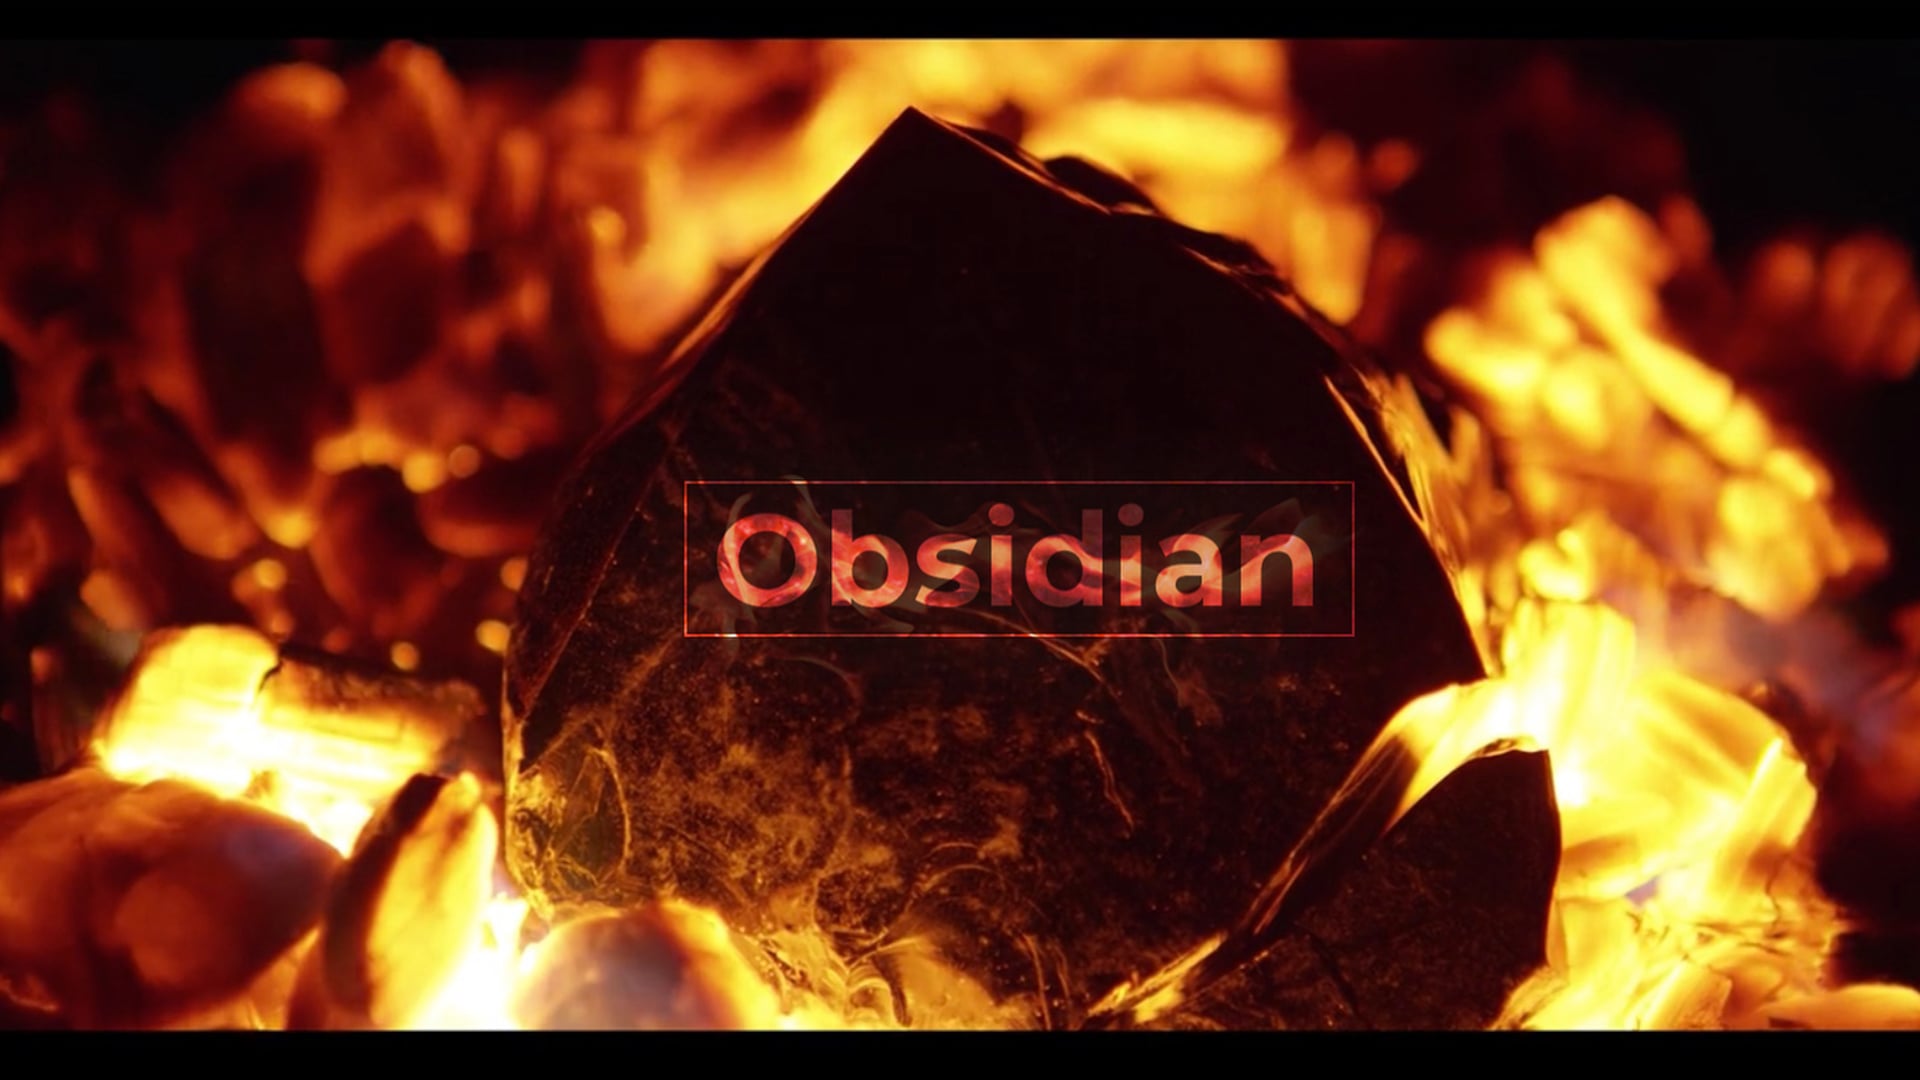 Obsidian- Winter Games NZ film comp winning film.